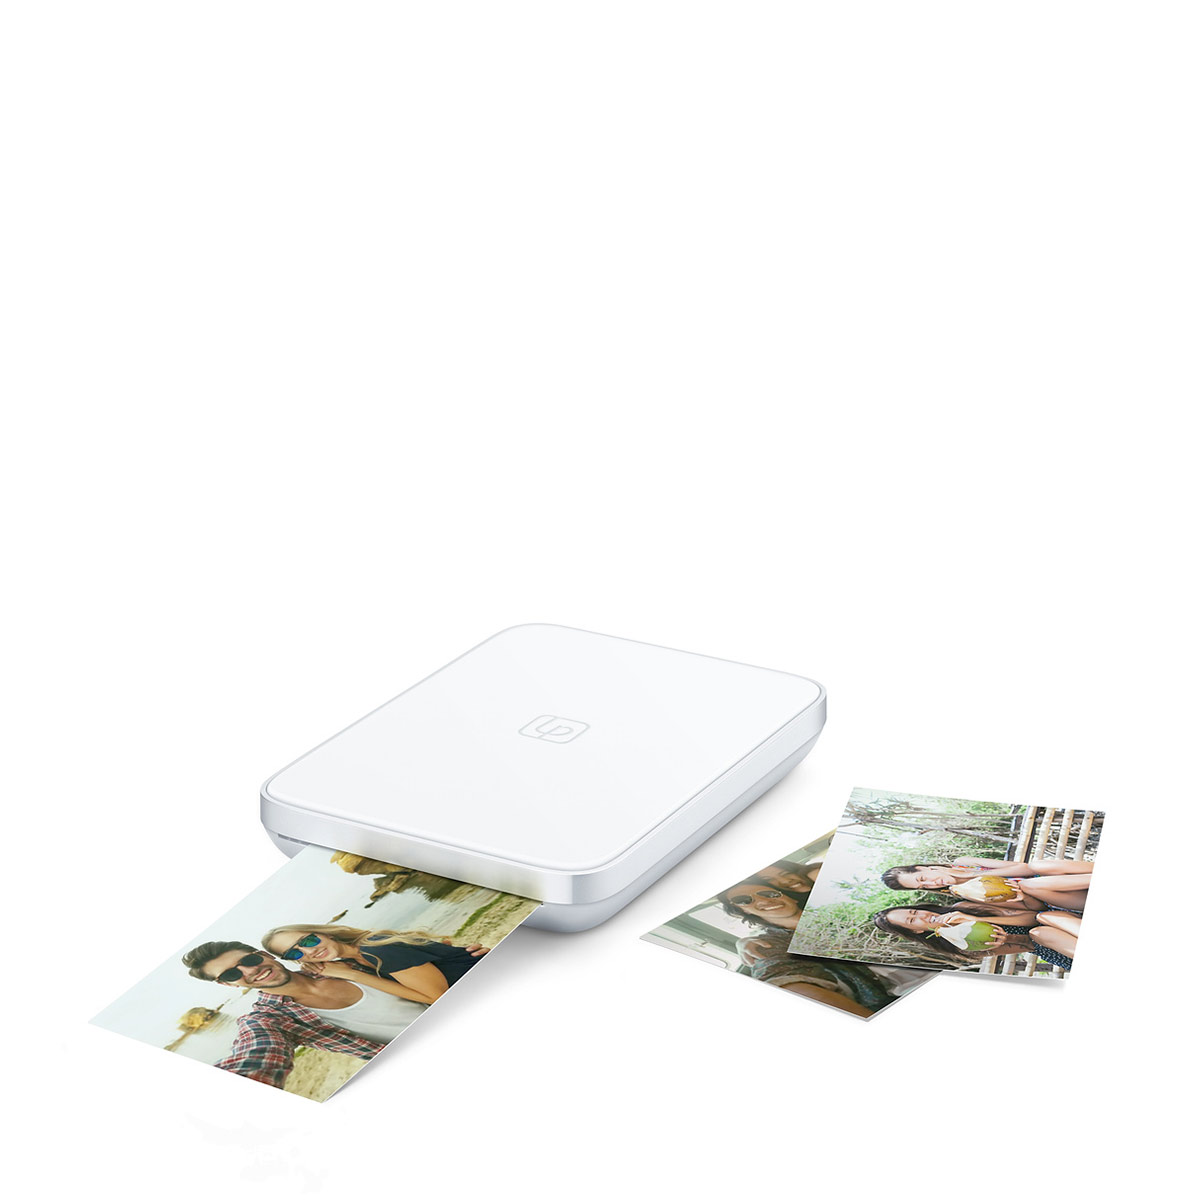 Imprimante photo et vidéo portative de 3 x 4,5 de Lifeprint pour iPhone et  Android. Donnez vie à vos photos avec la réalité augmentée - Blanc